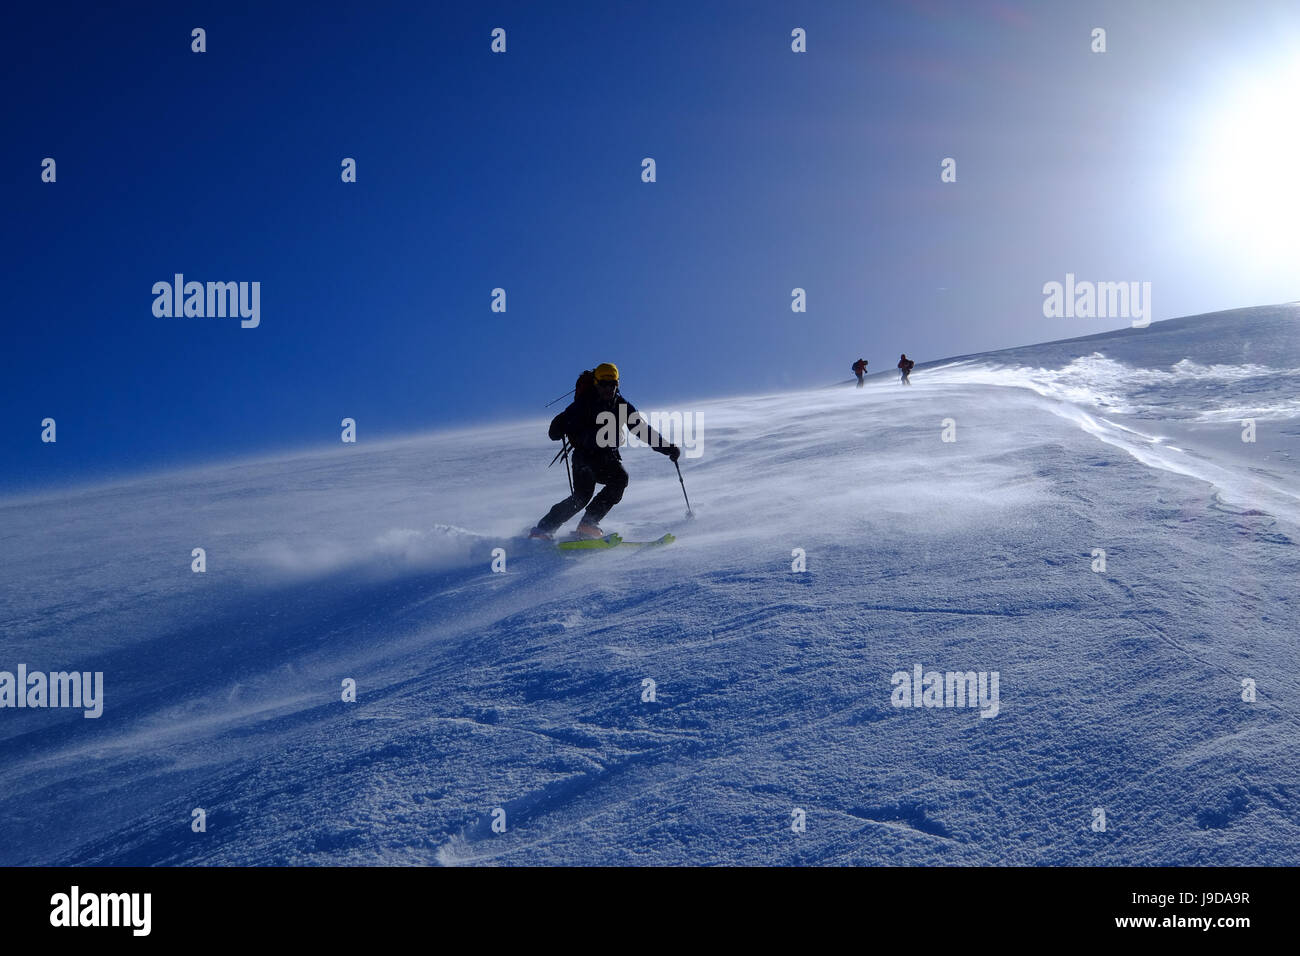 Ski mountaineering on Mount Etna, Catania, Sicily, Italy, Europe Stock Photo